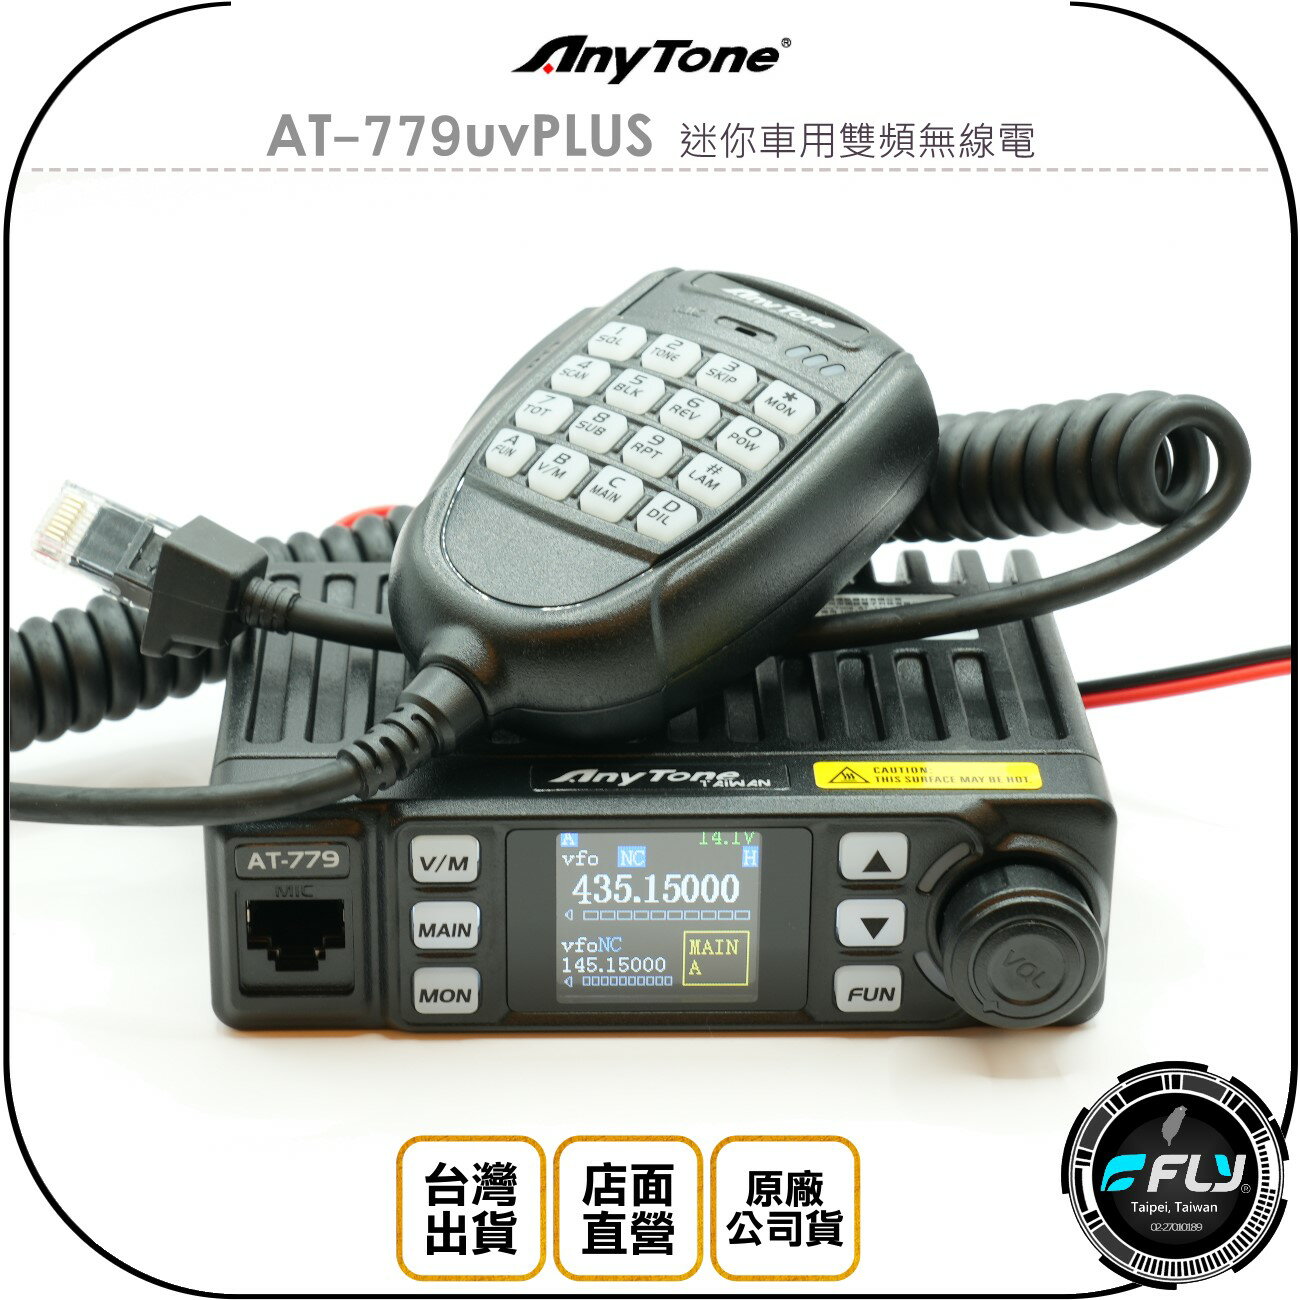 《飛翔無線3C》Any Tone AT-779uvPLUS 迷你車用雙頻無線電◉公司貨◉車機對講◉跟車通話◉25W長距離